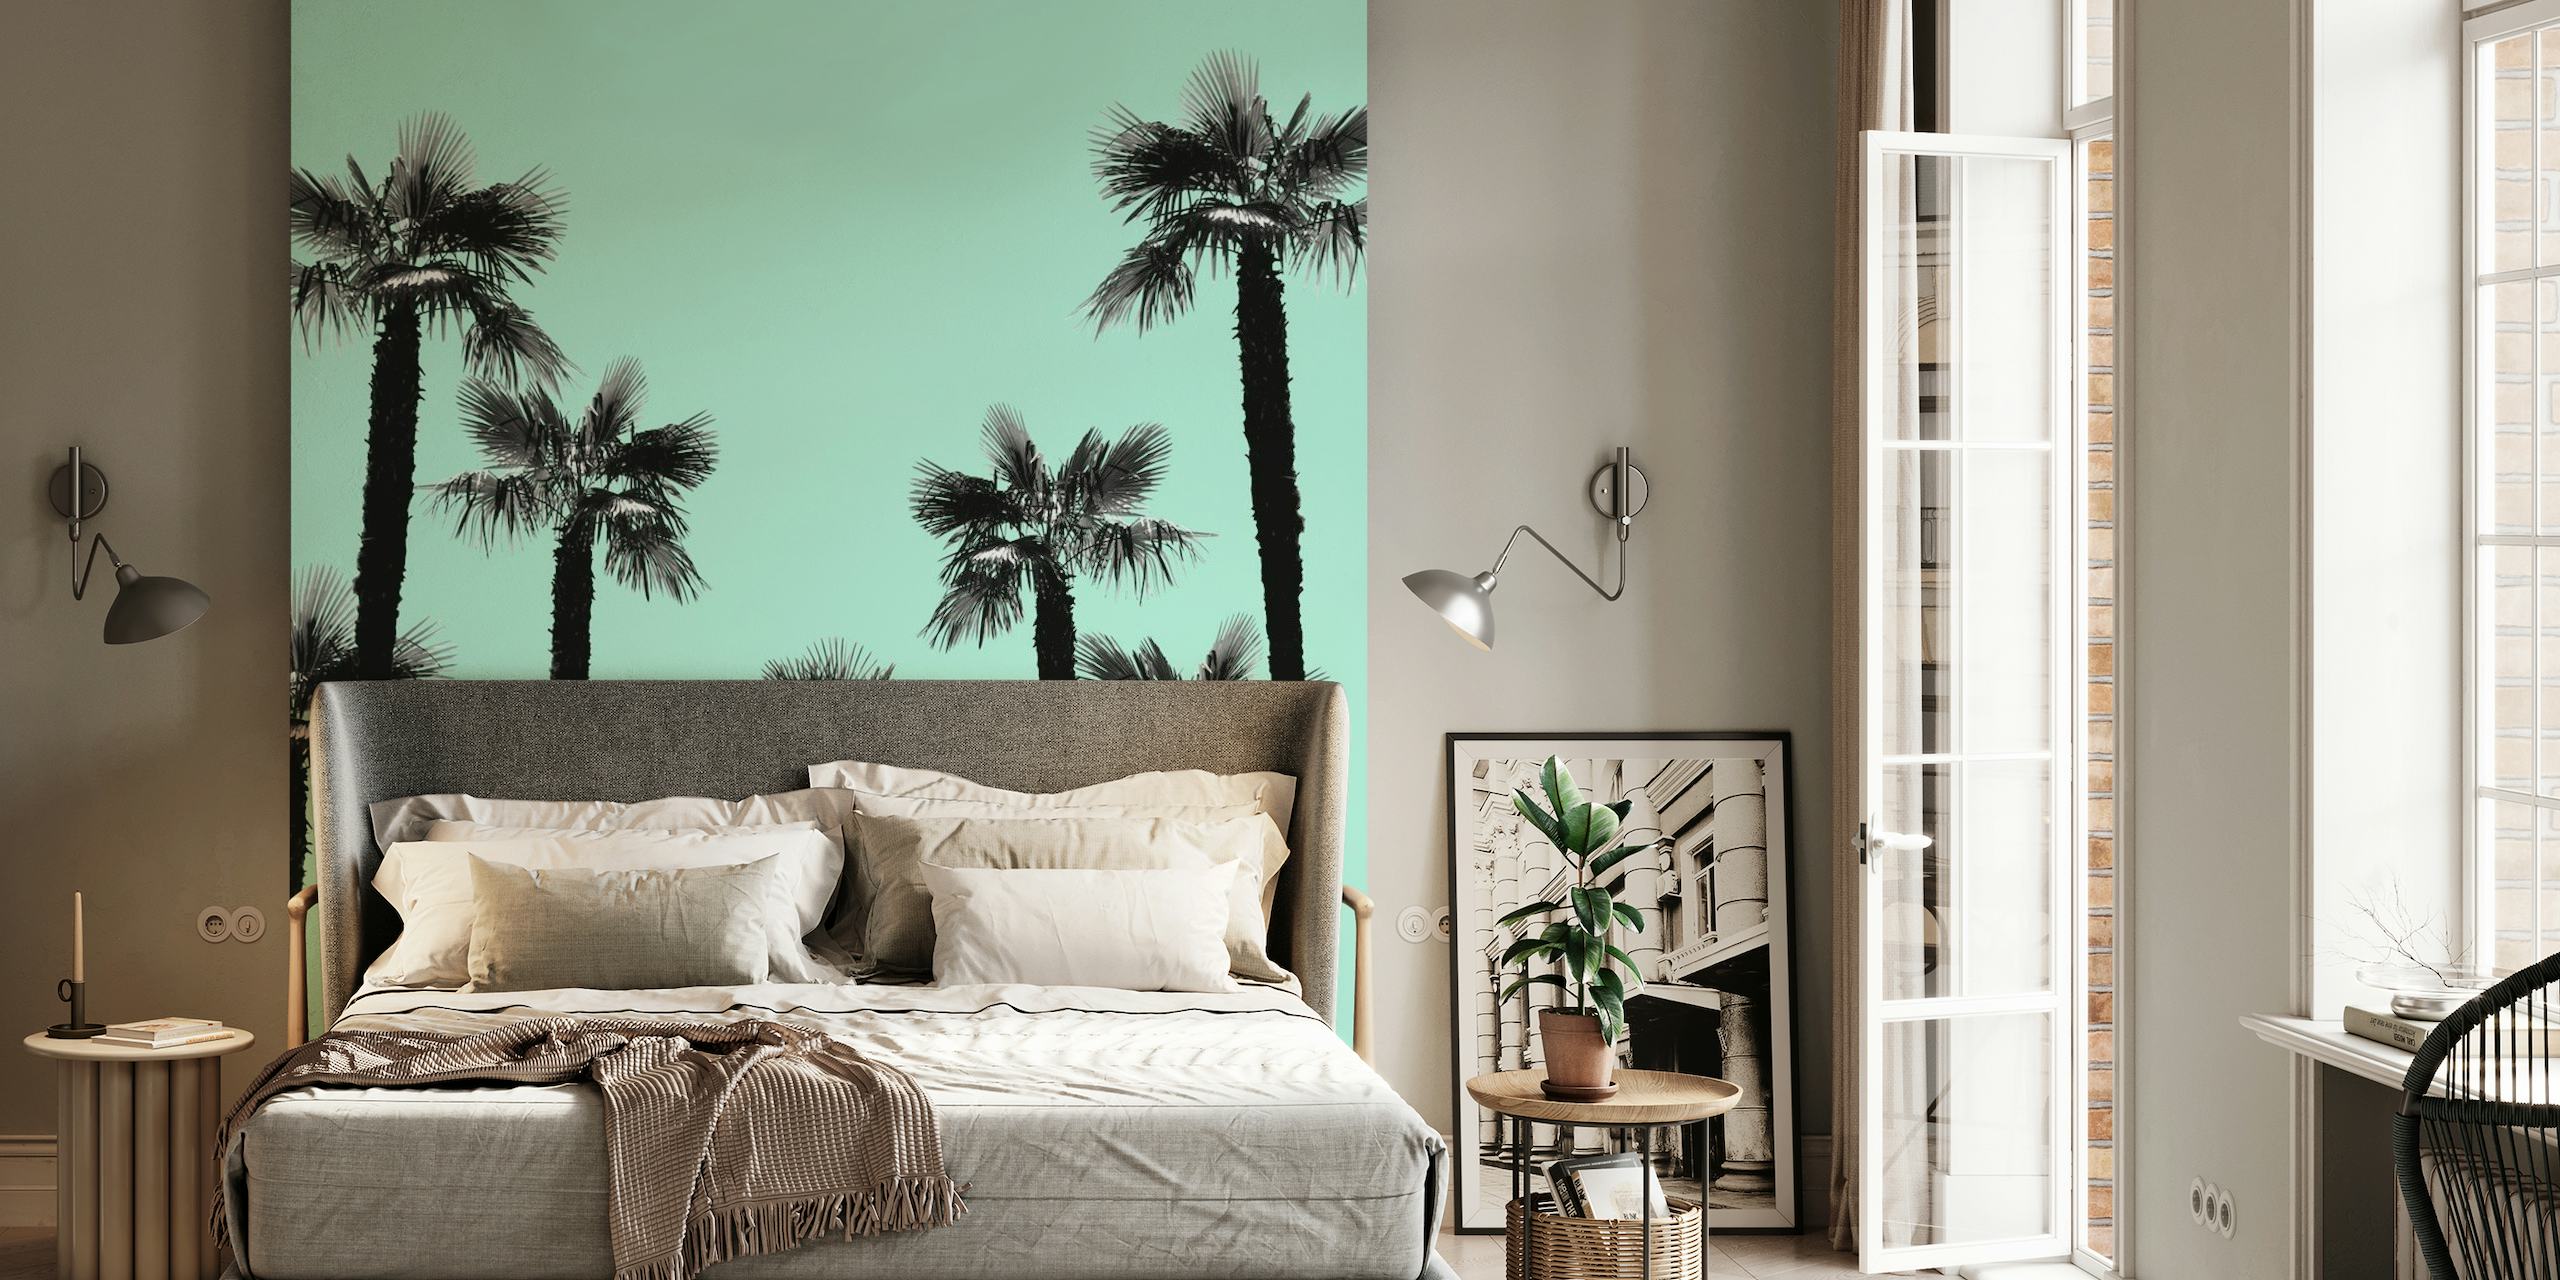 Tropical Palm Trees Dream 5 papel pintado